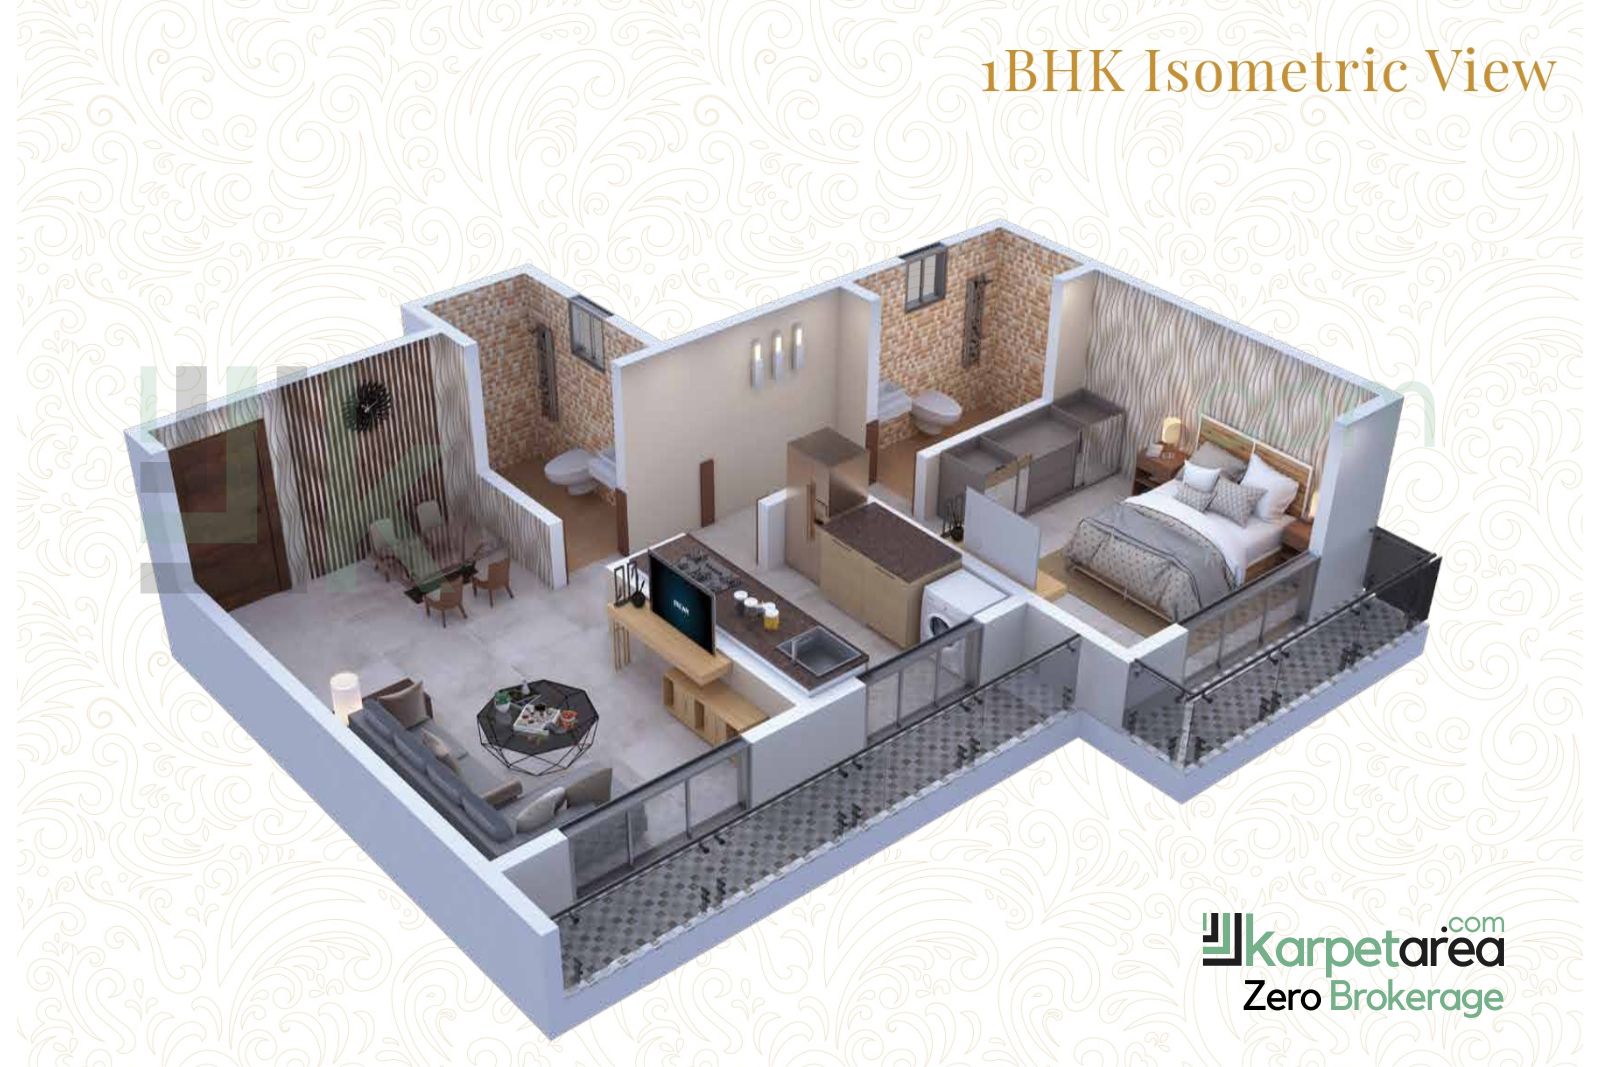 1 BHK Luxurious Apartments at Silver Lifestyle in Kausa, Mumbra, Thane 400612